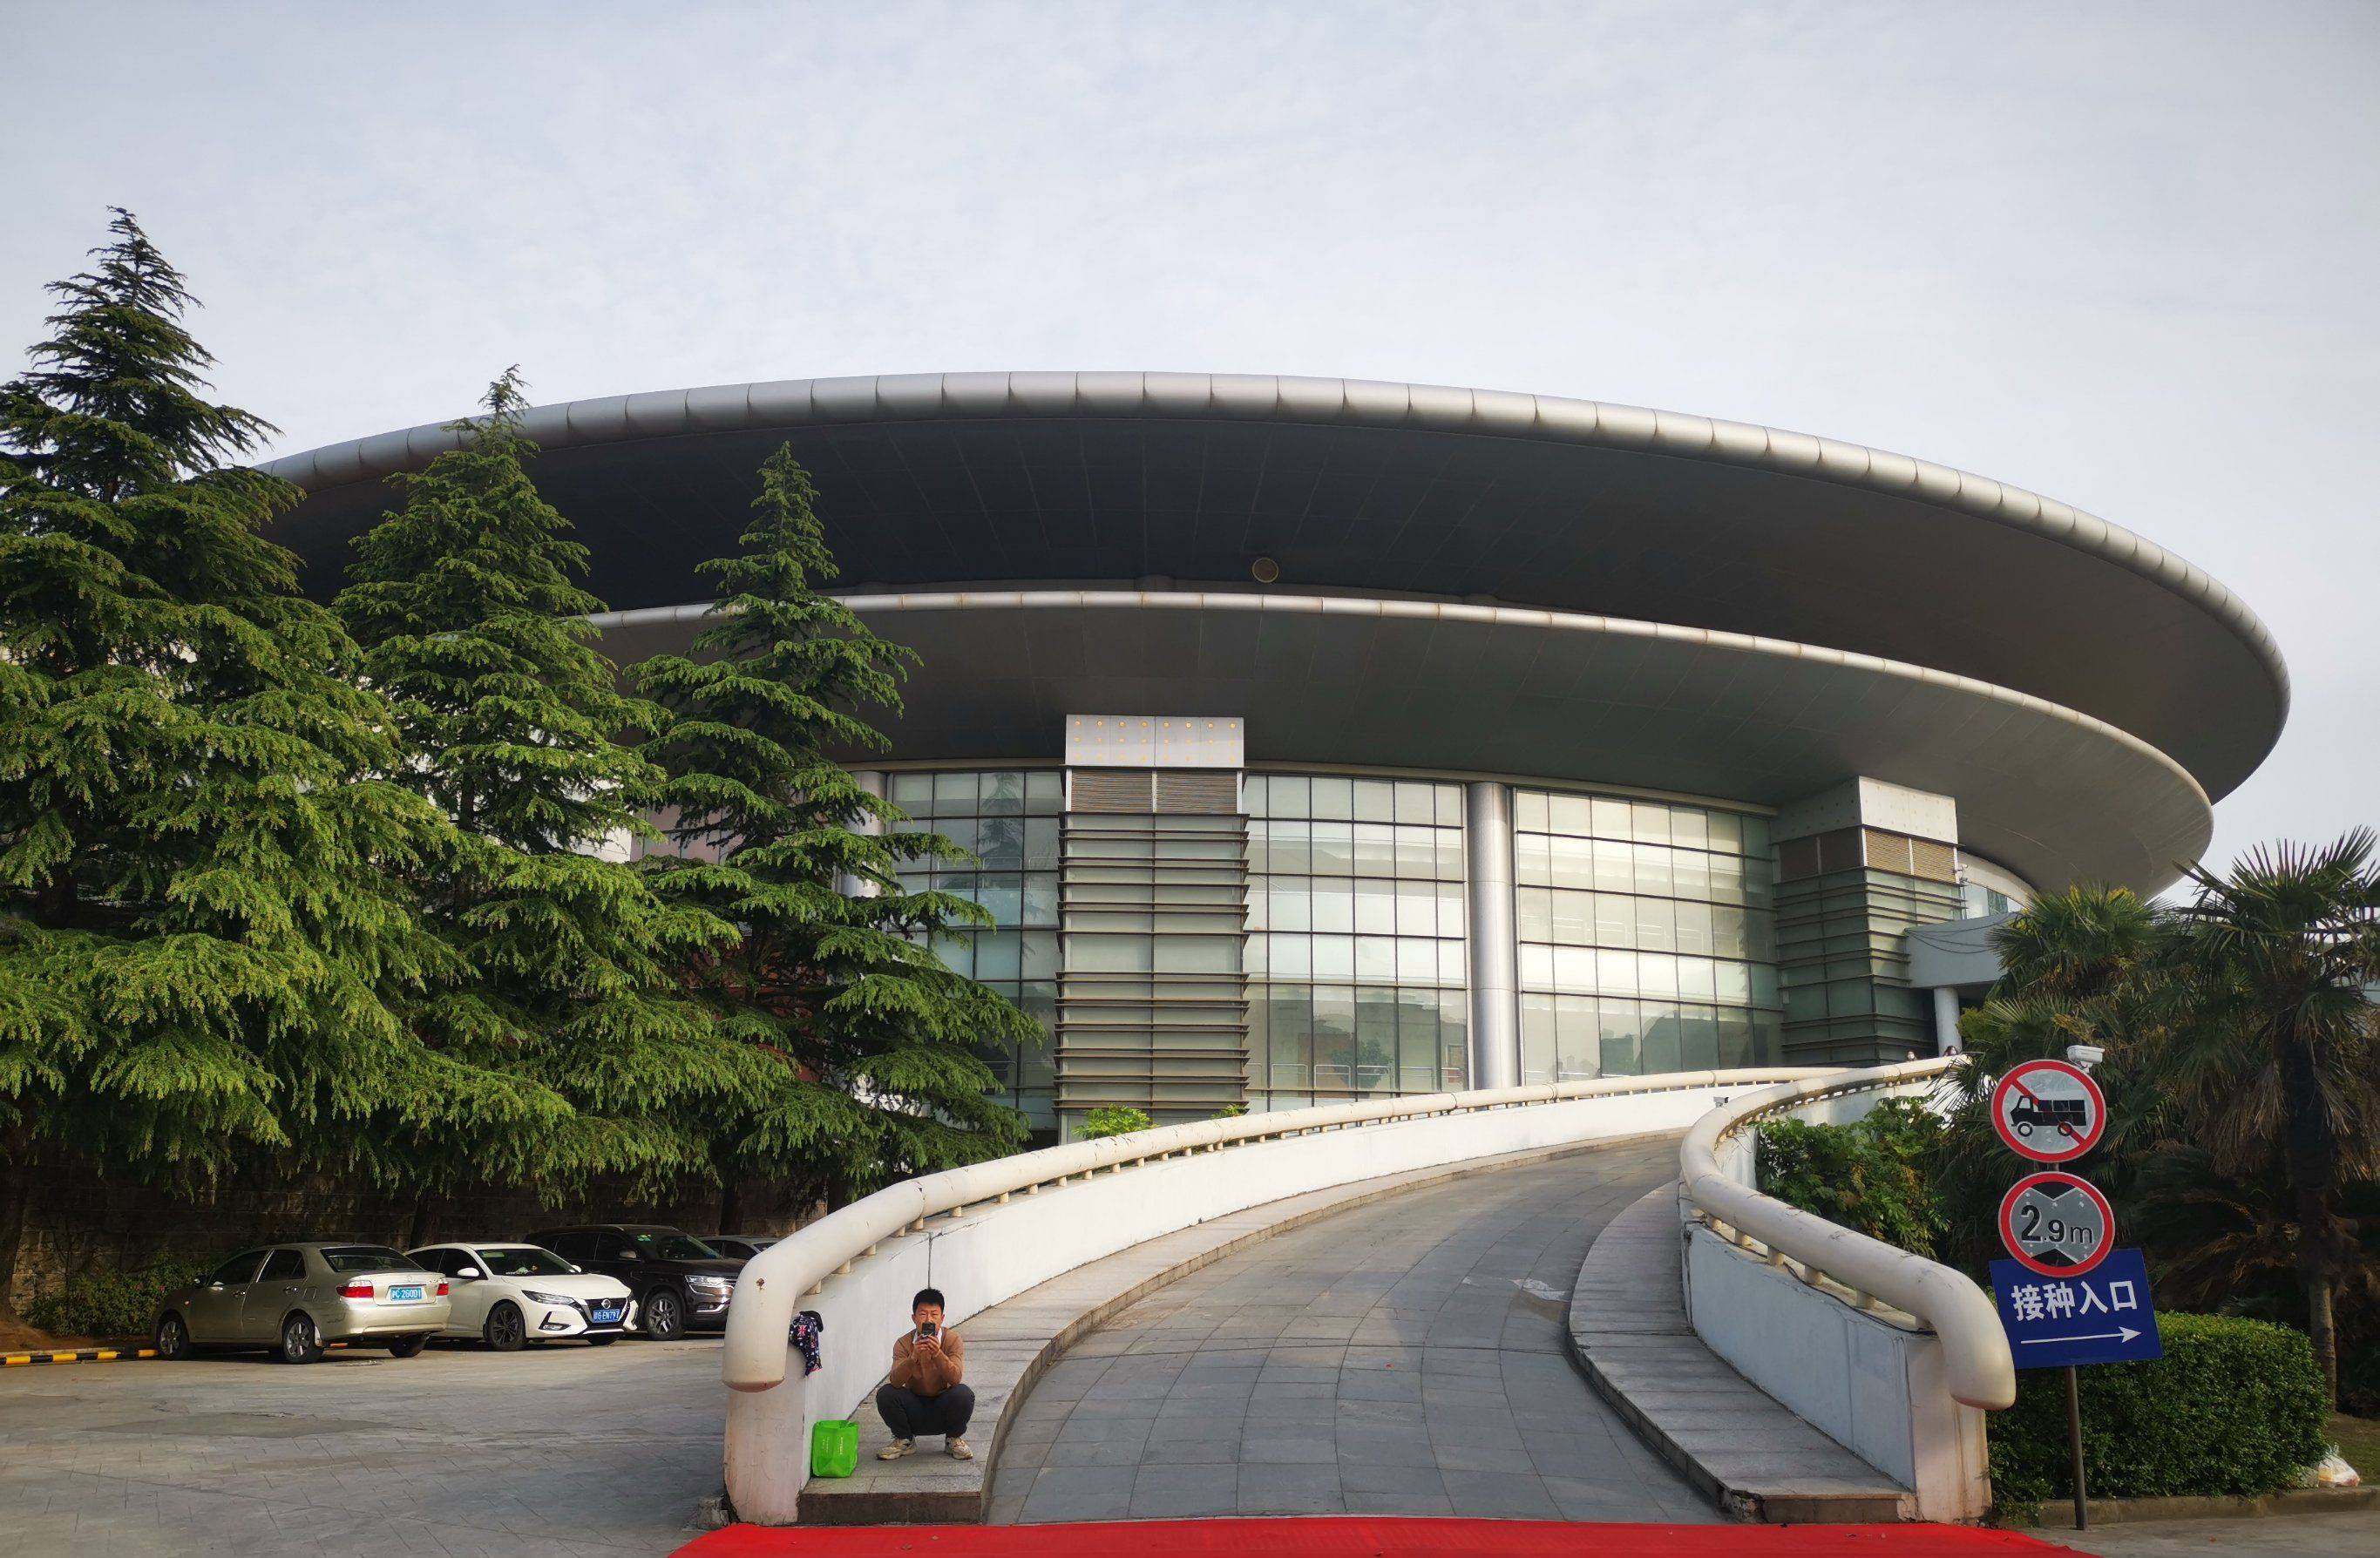 上海南汇体育中心篮球场翻新:凯美沃篮球场油漆应用案例